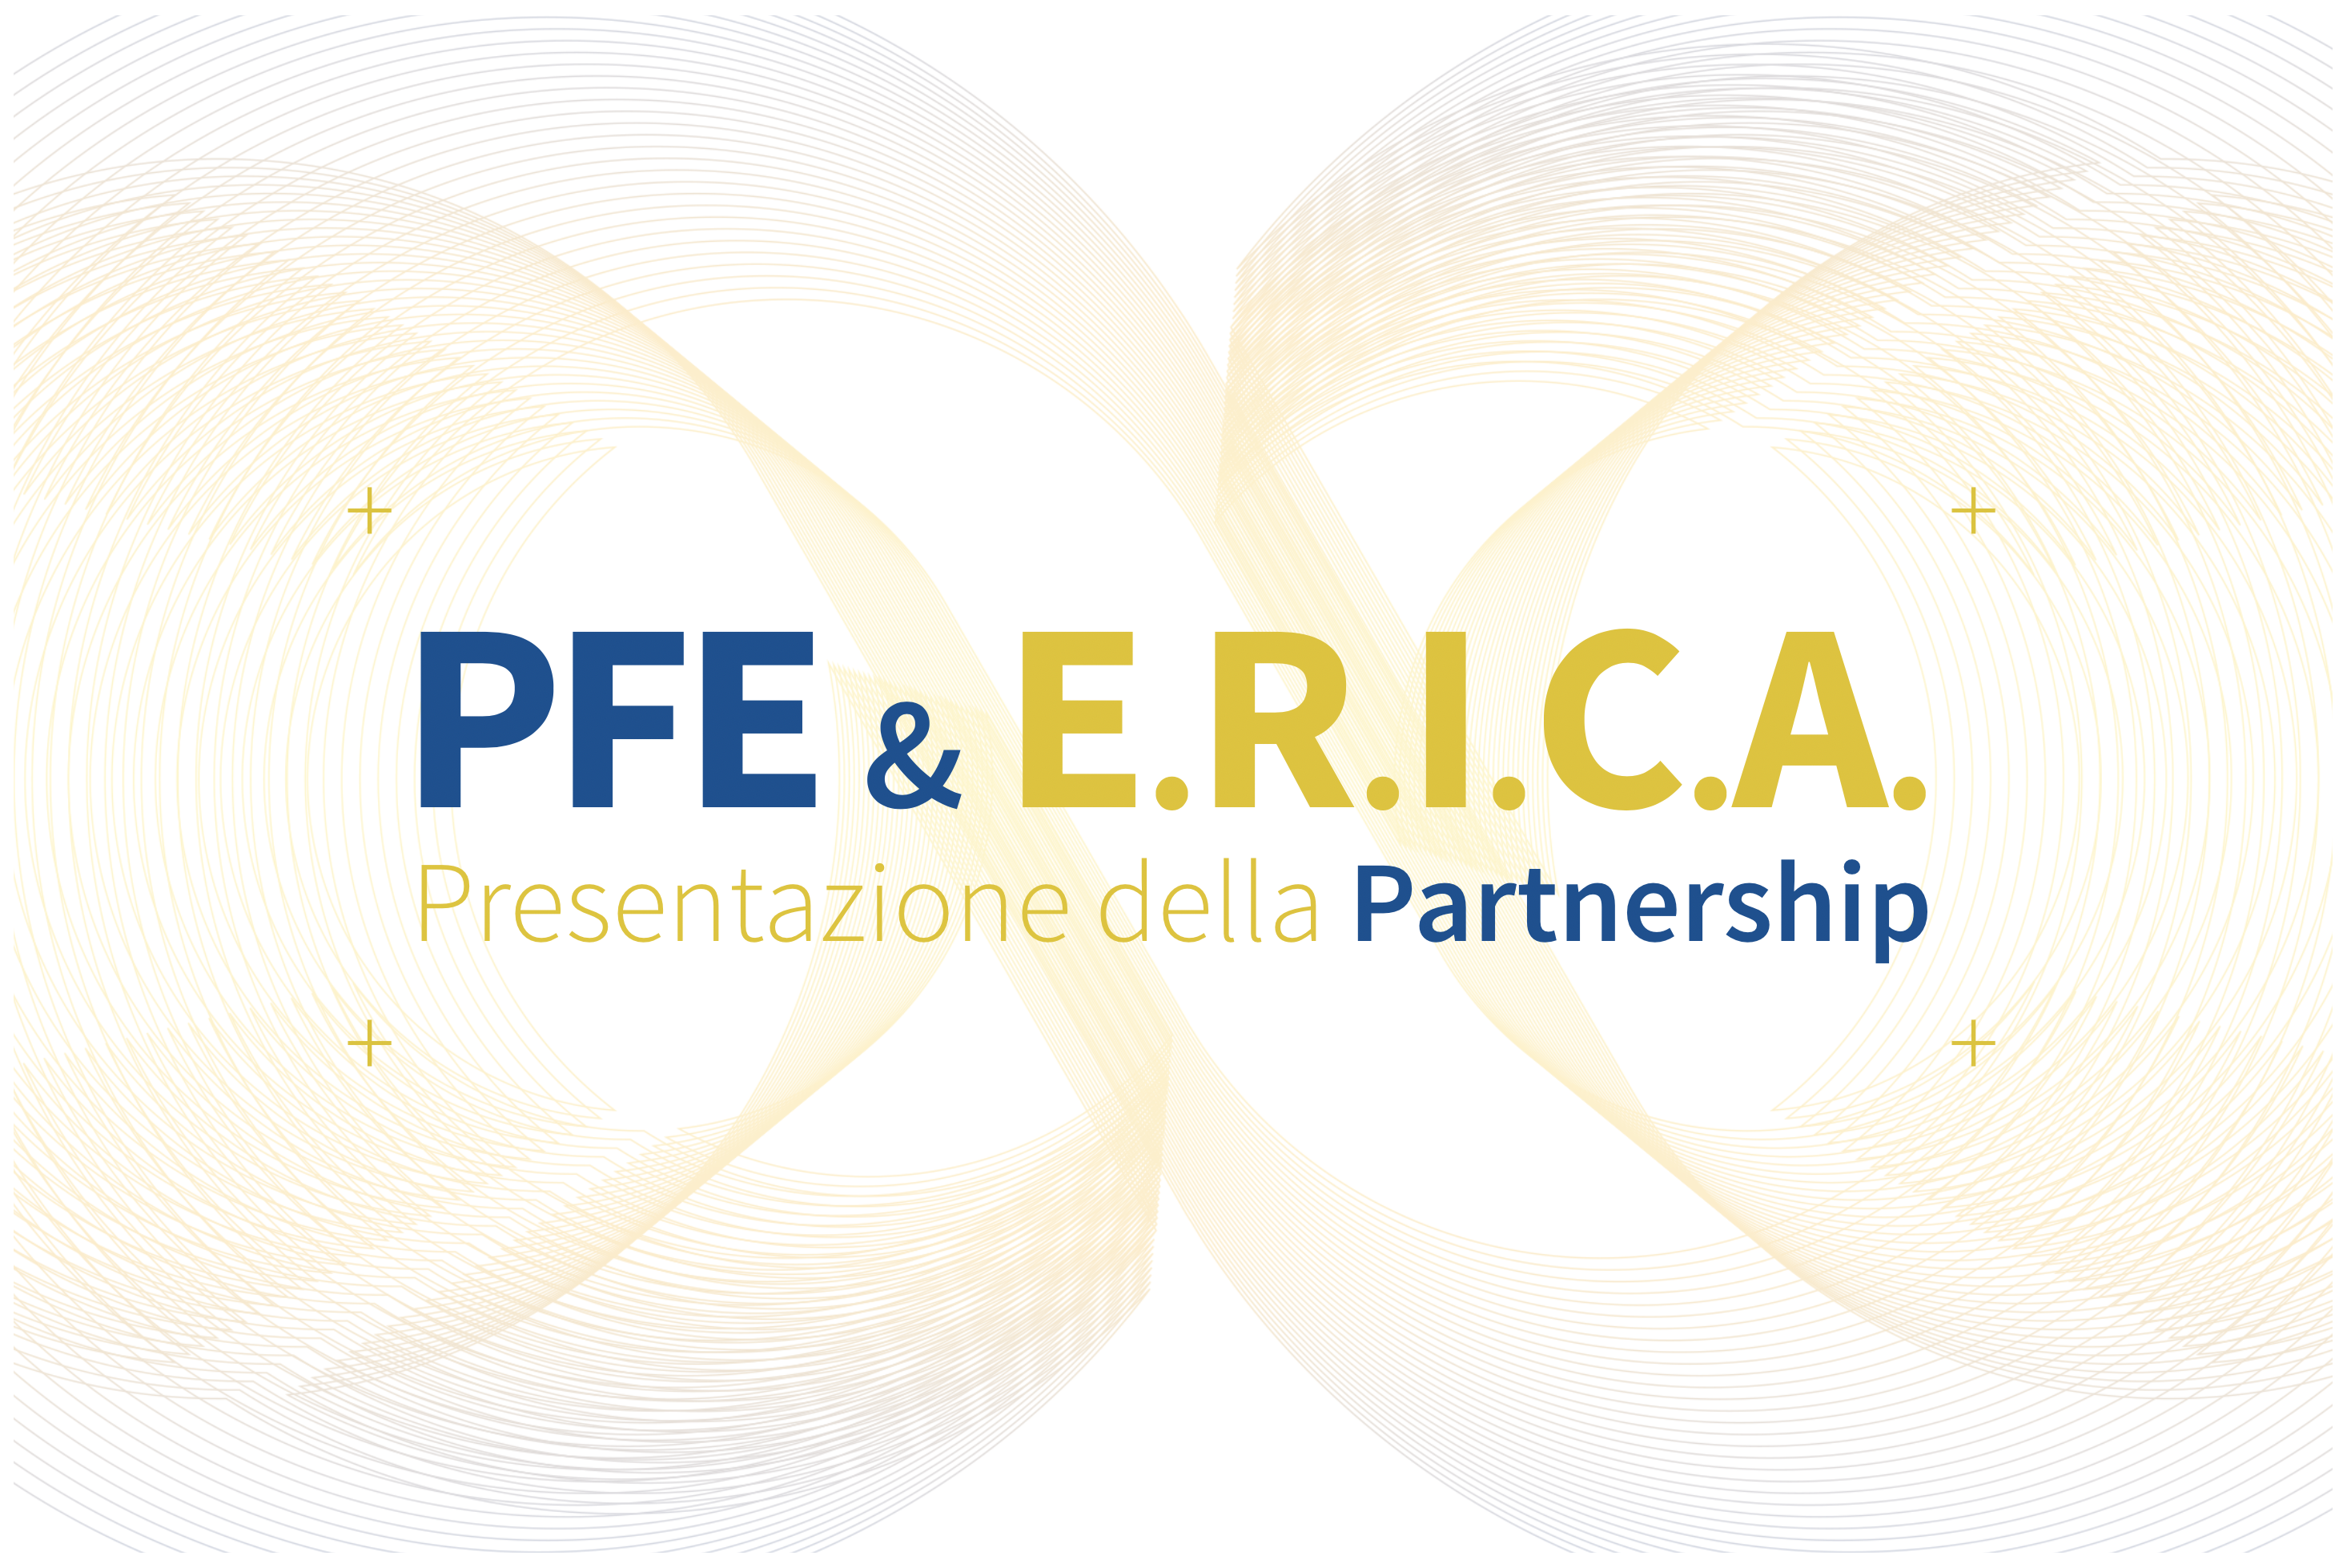 PFE & E.R.I.C.A.: una partnership “green” per creare valore nei rispettivi mercati